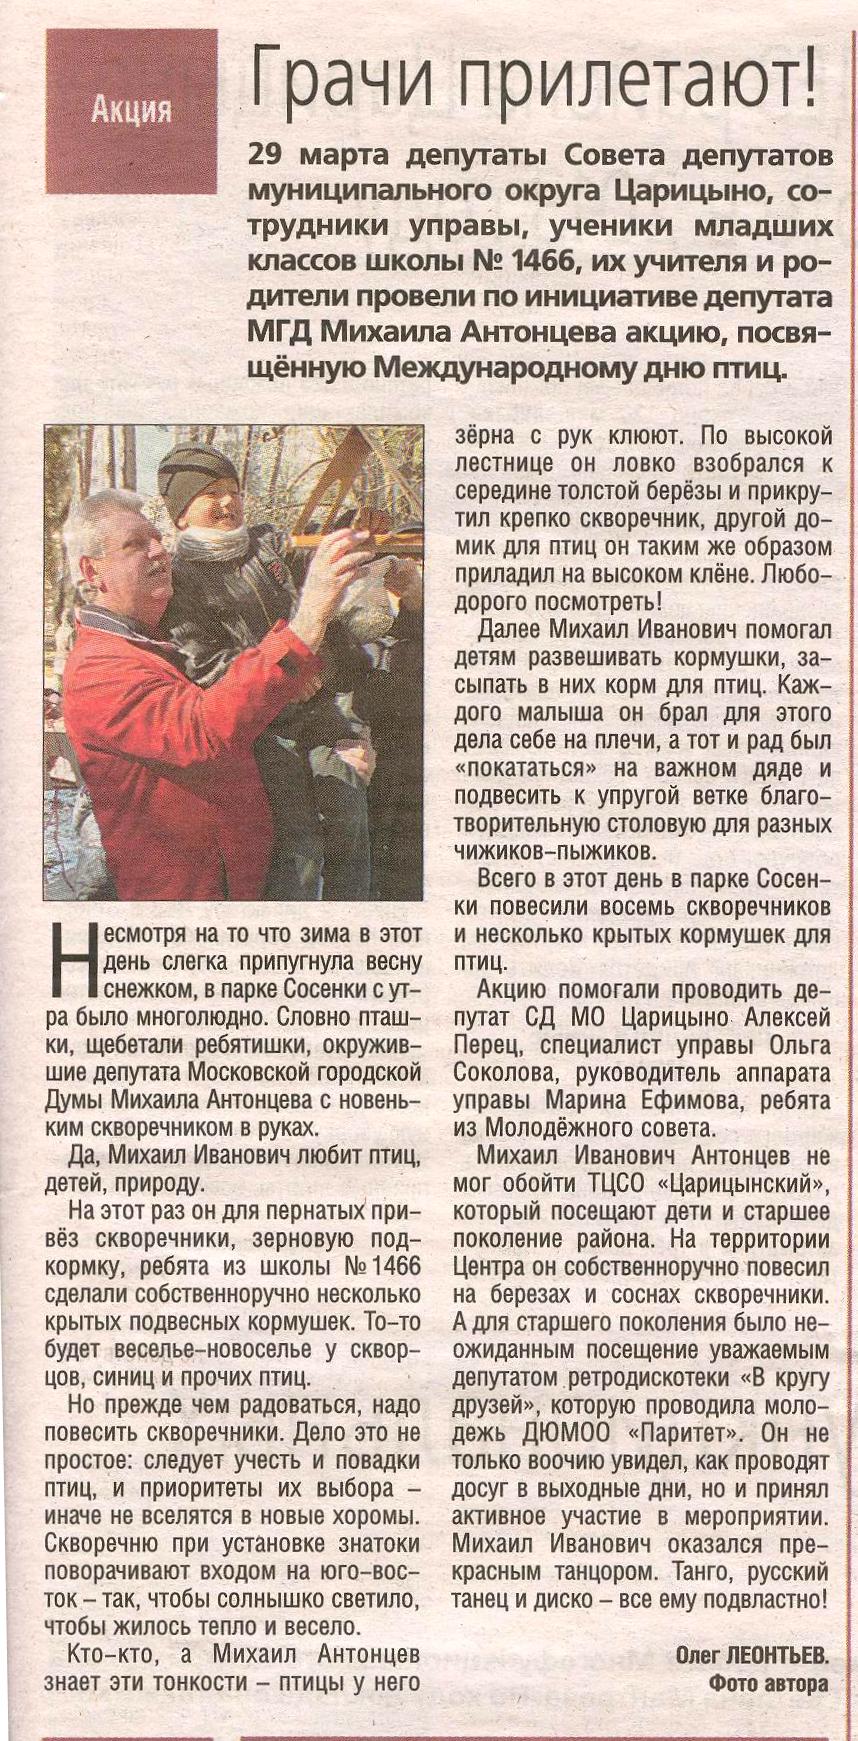 «Грачи прилетели». Газета «Царицынский вестник» № 4 (182), март 2014 г.